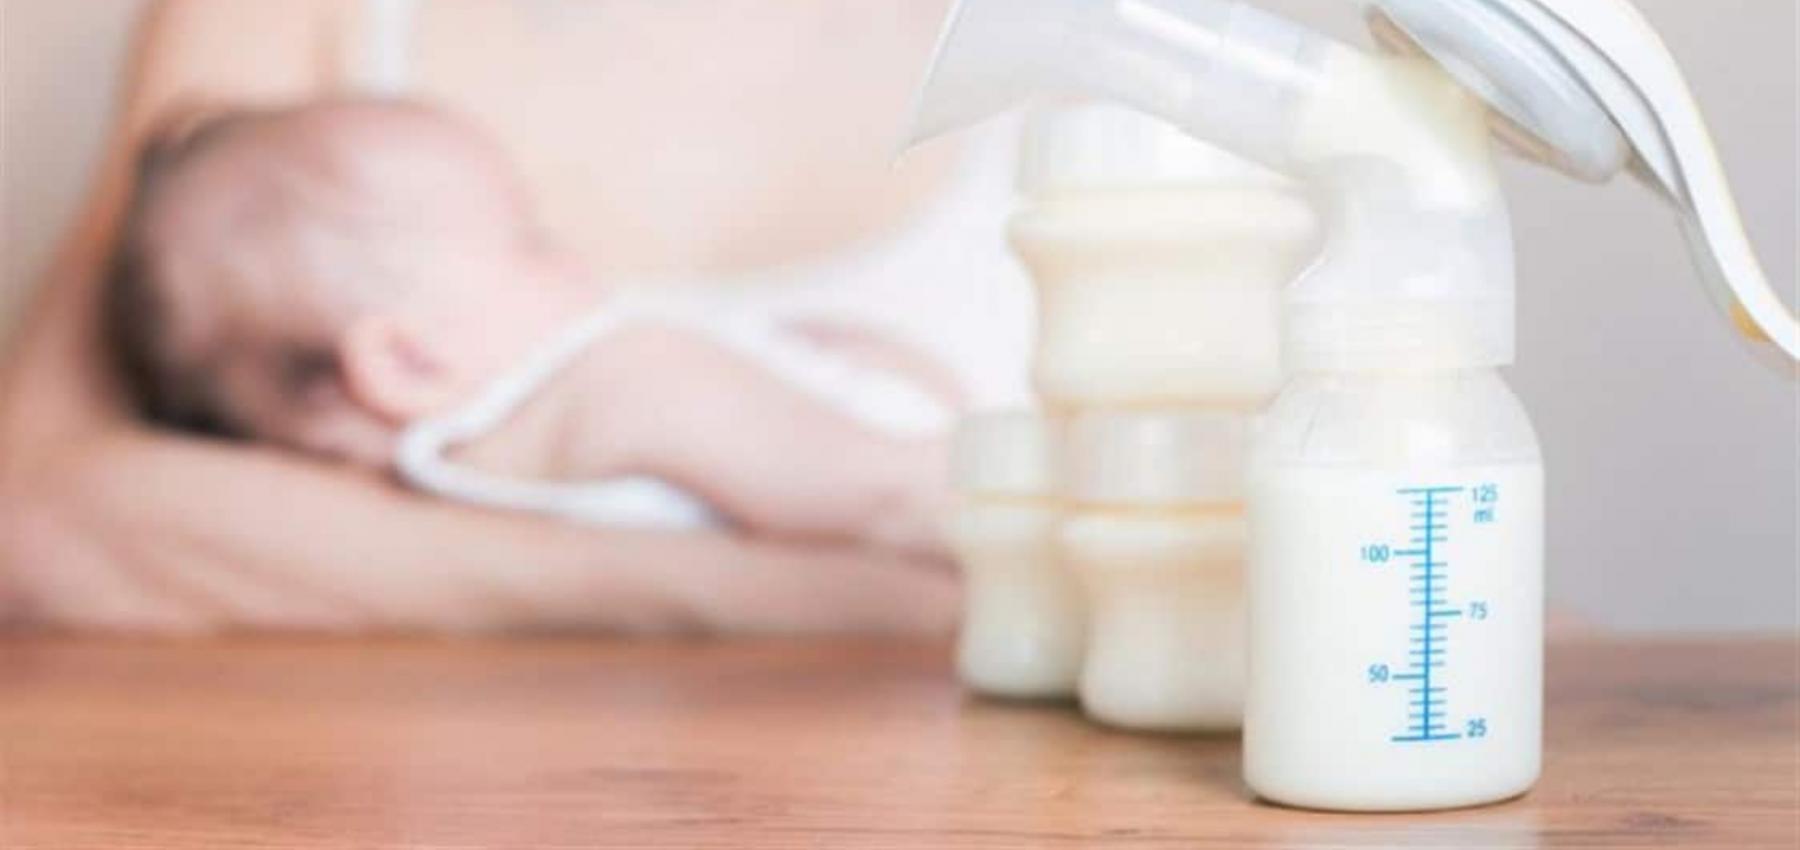 الخضوع سابقًا لجراحة في الثدي أيا كان نوعها يمكن أن يساهم في تكوين أورام ليفية تؤثر على قنوات الحليب.